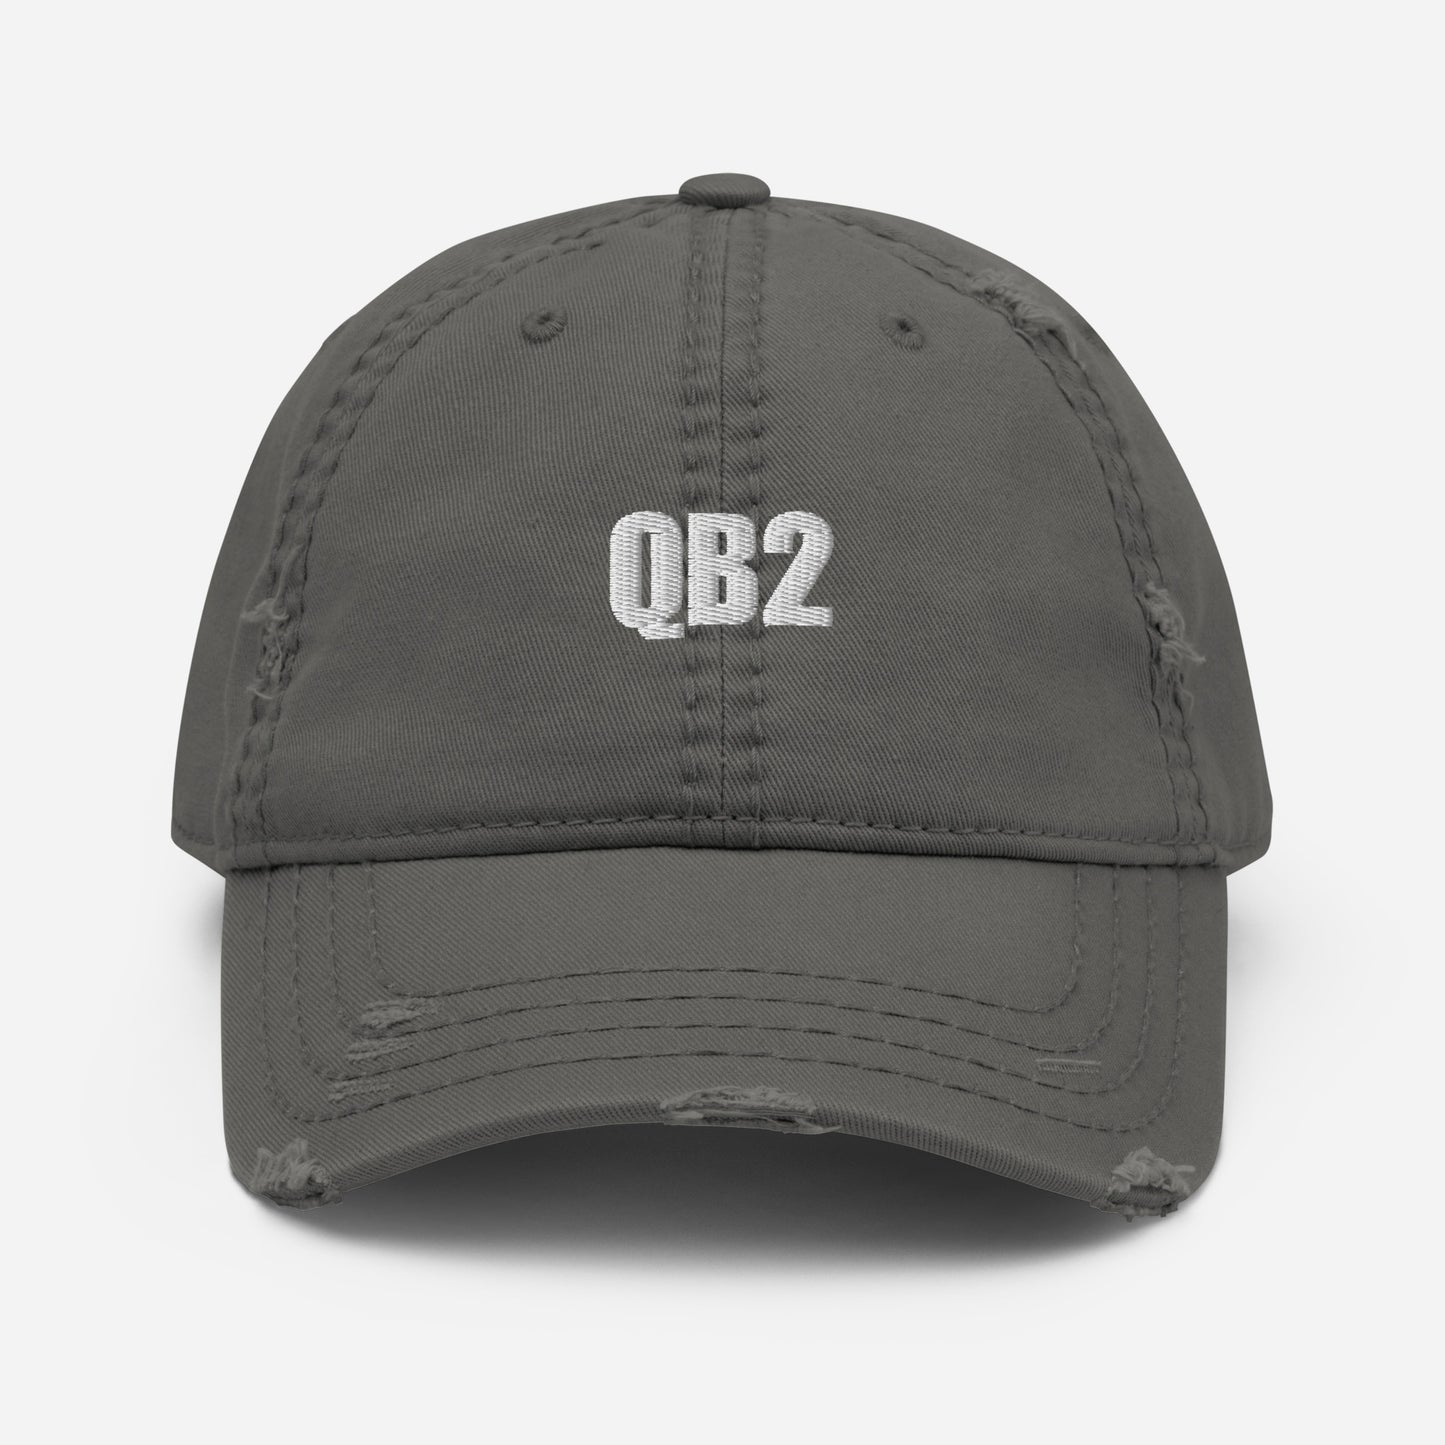 Distressed QB2 Hat